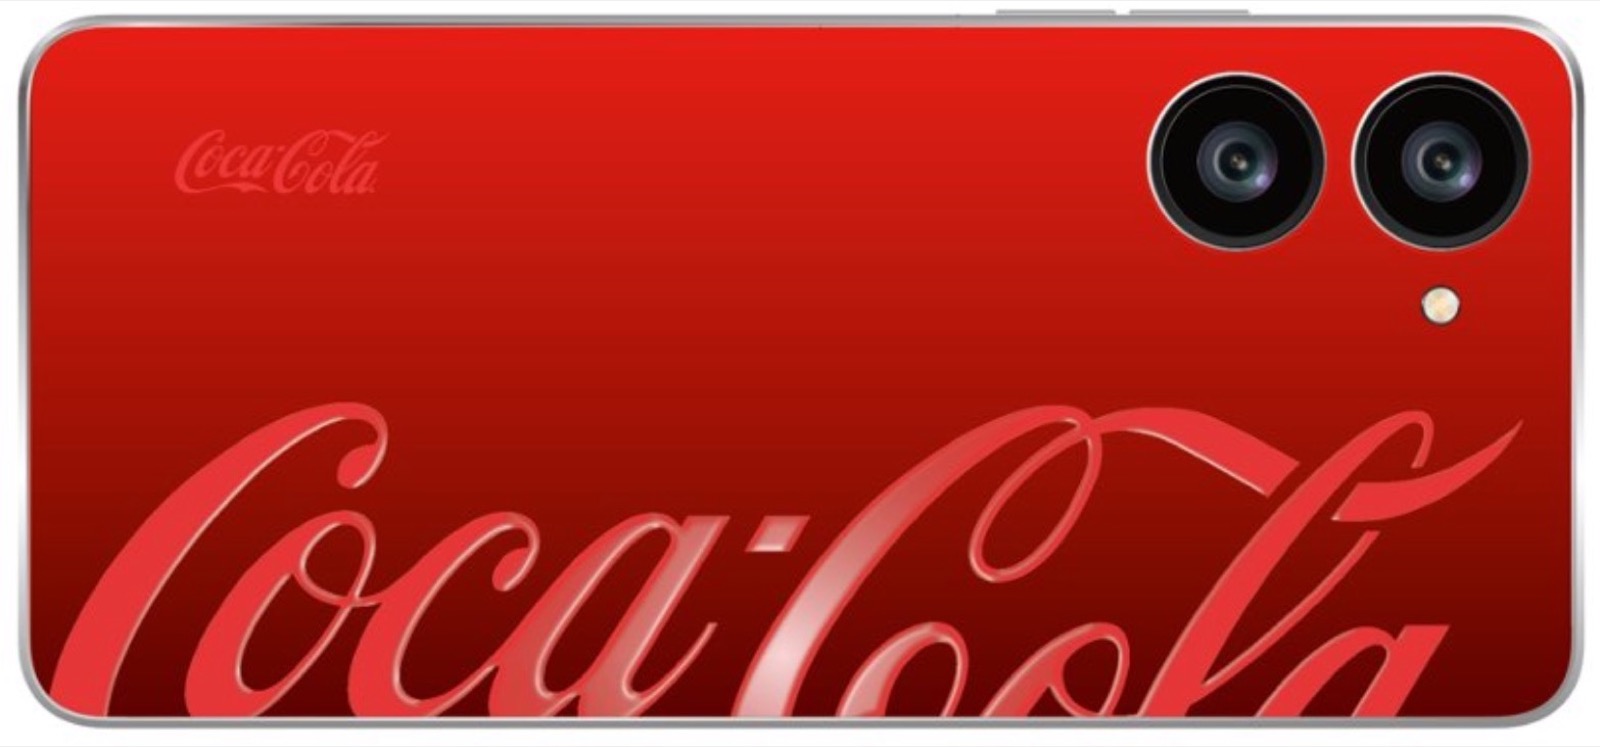 Un Android Coca-Cola sarà presto tra noi